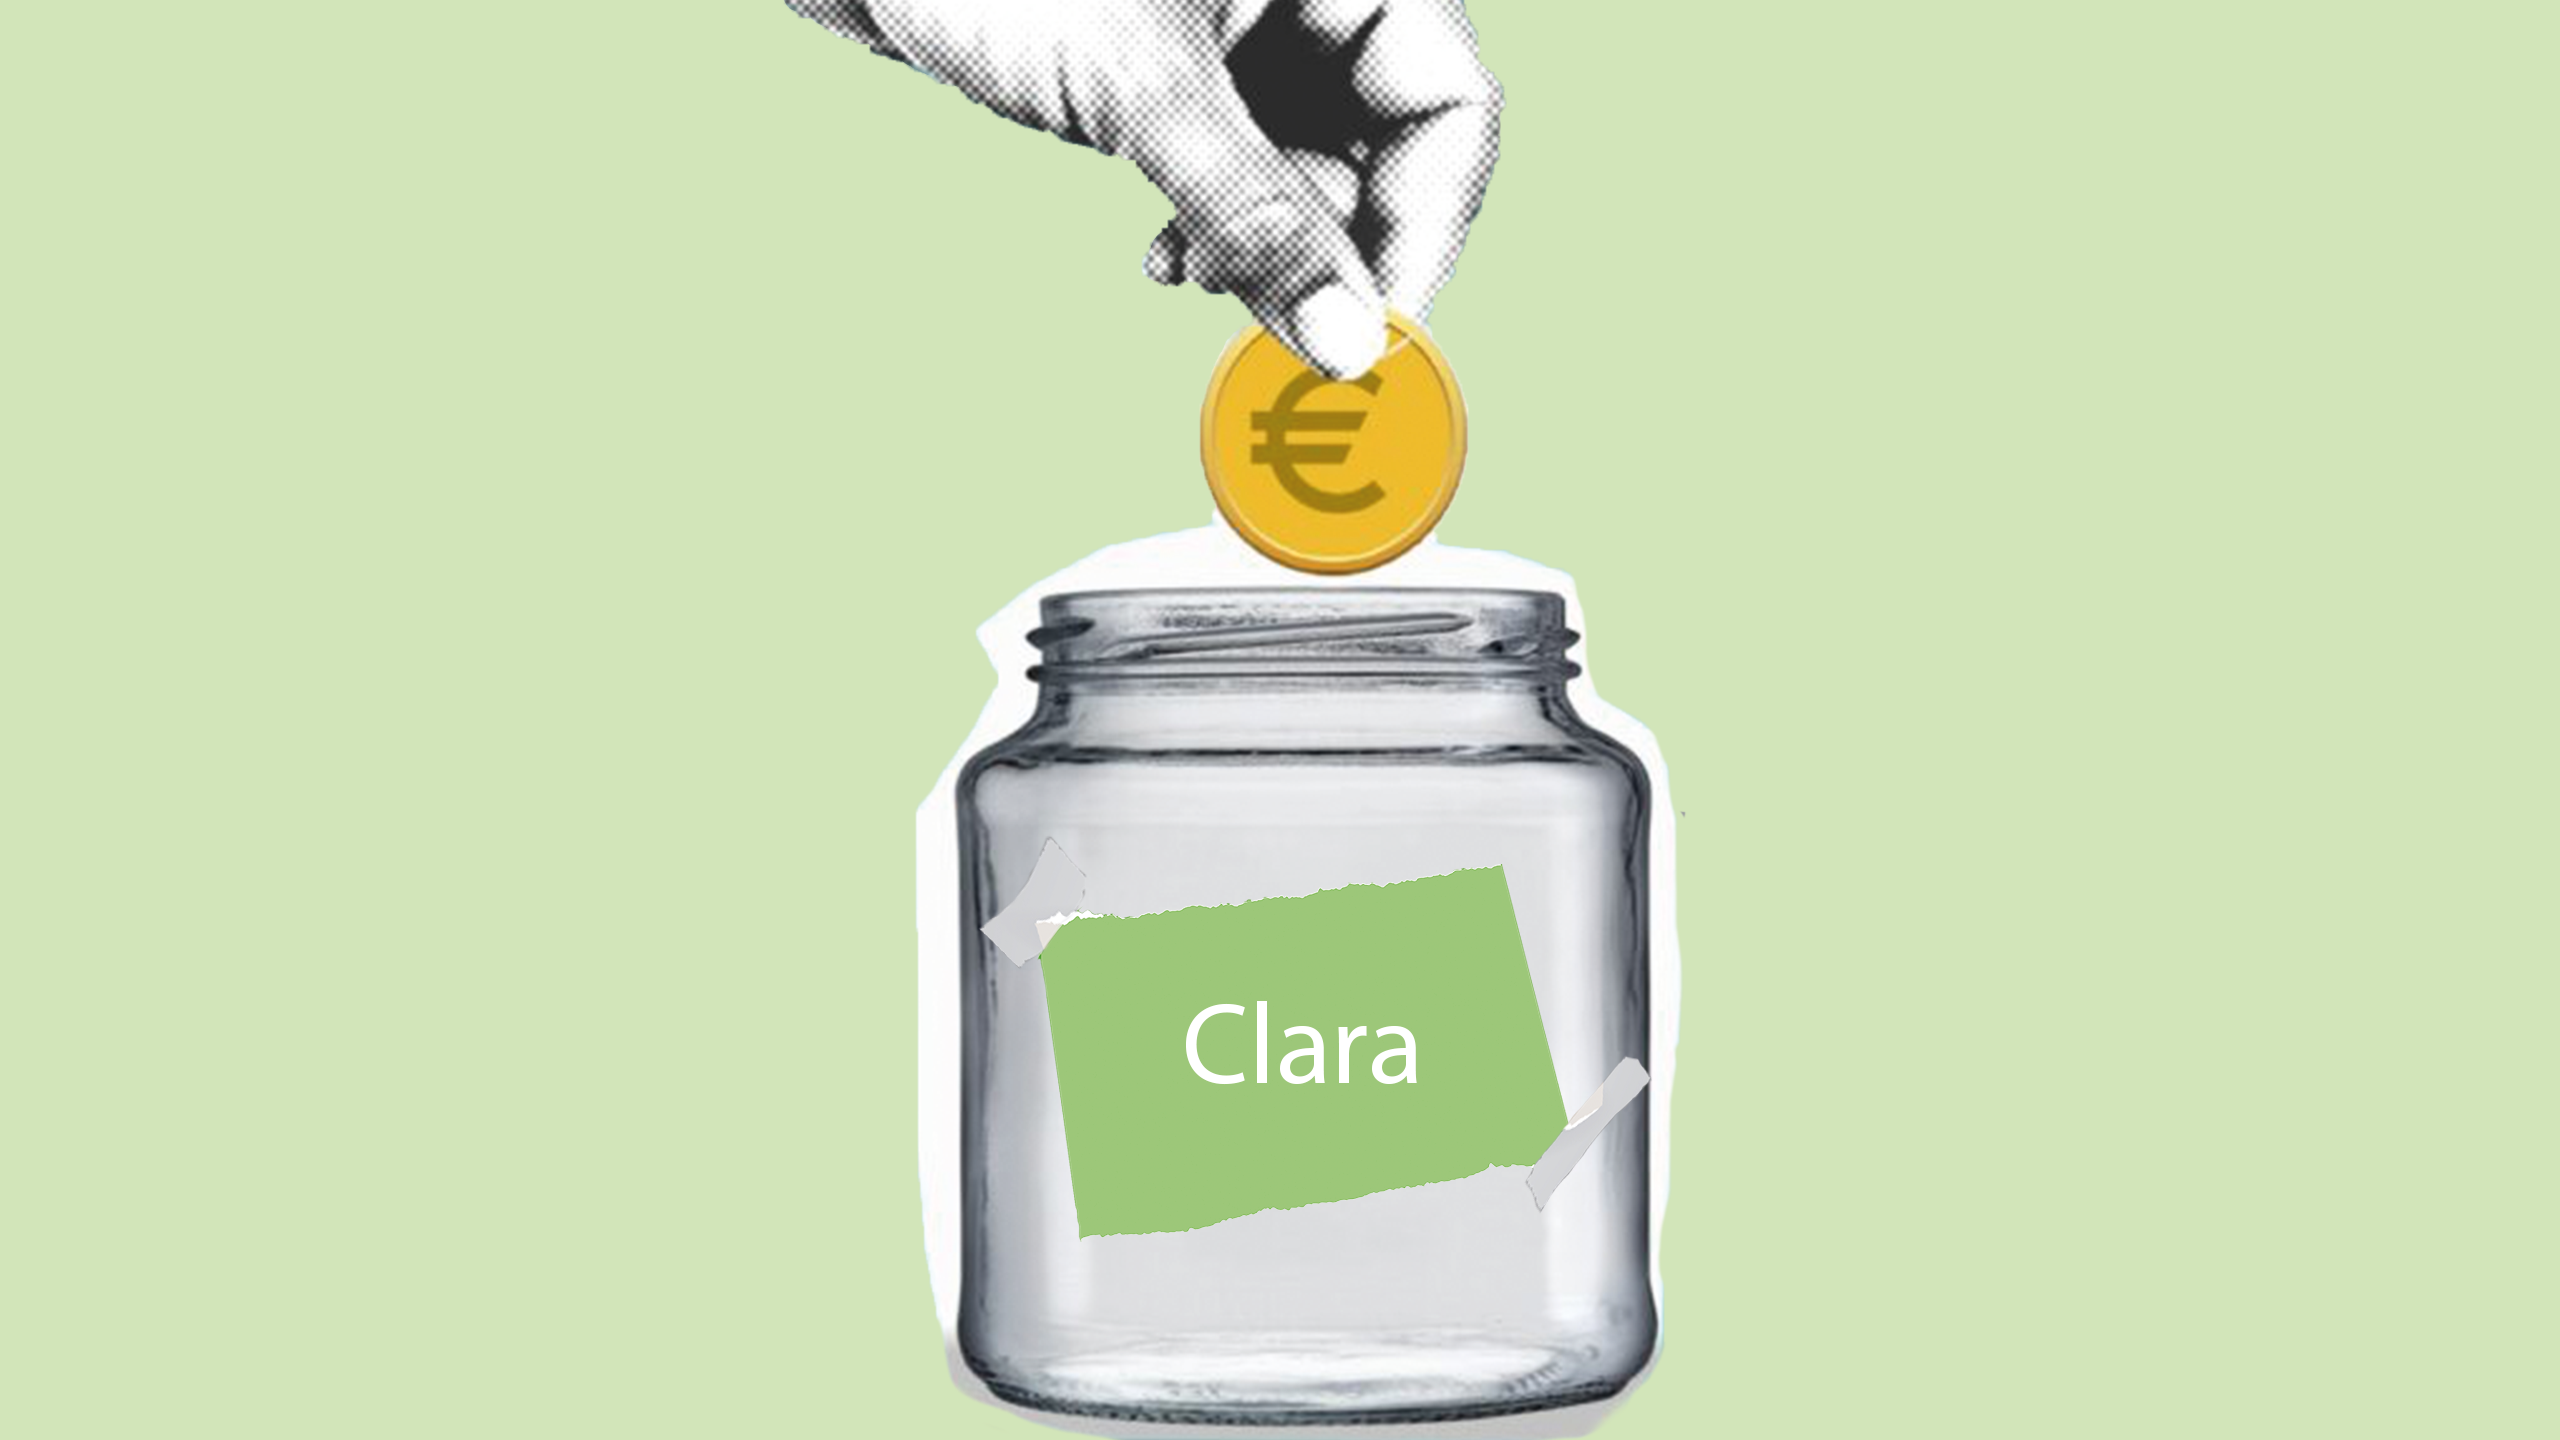 De Spaarrekening van Clara